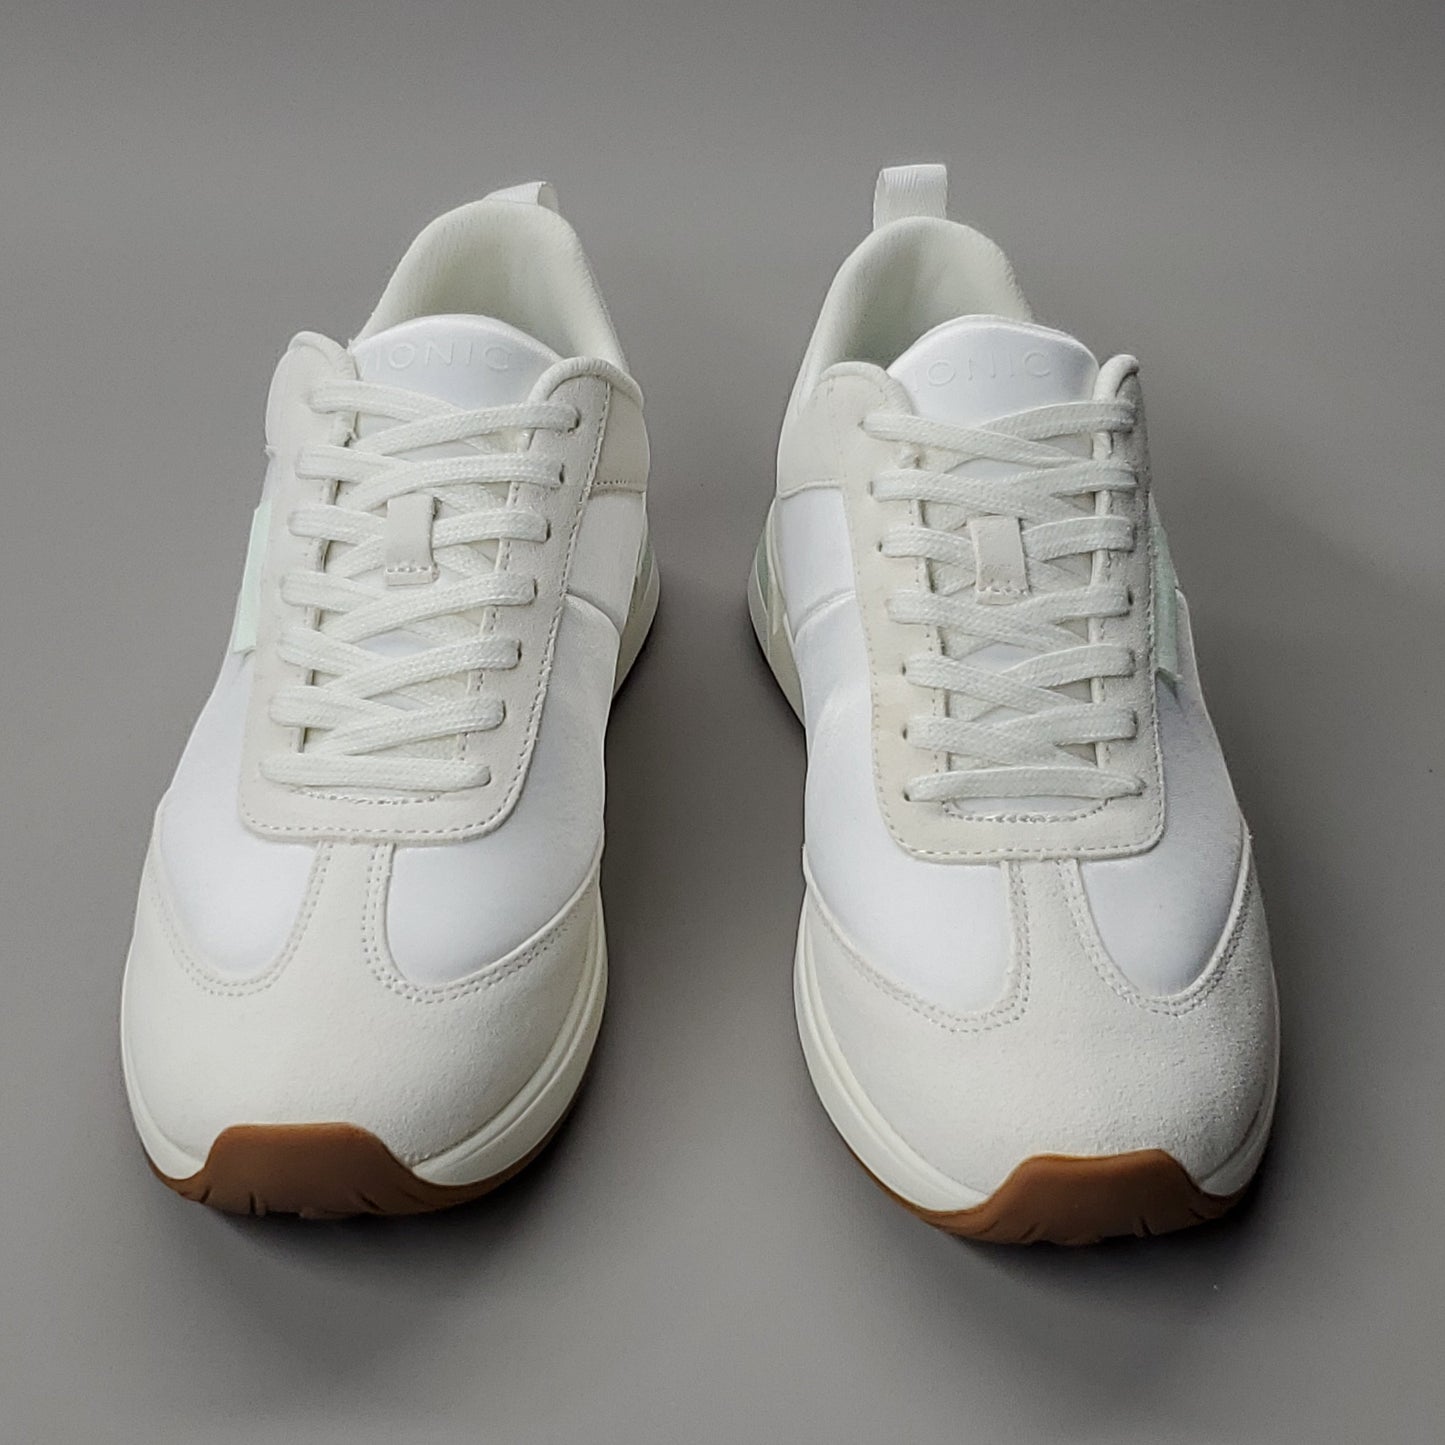 VIONIC Breilyn Satin Sneaker Shoe Women's Sz 6 M Beige/White (New)